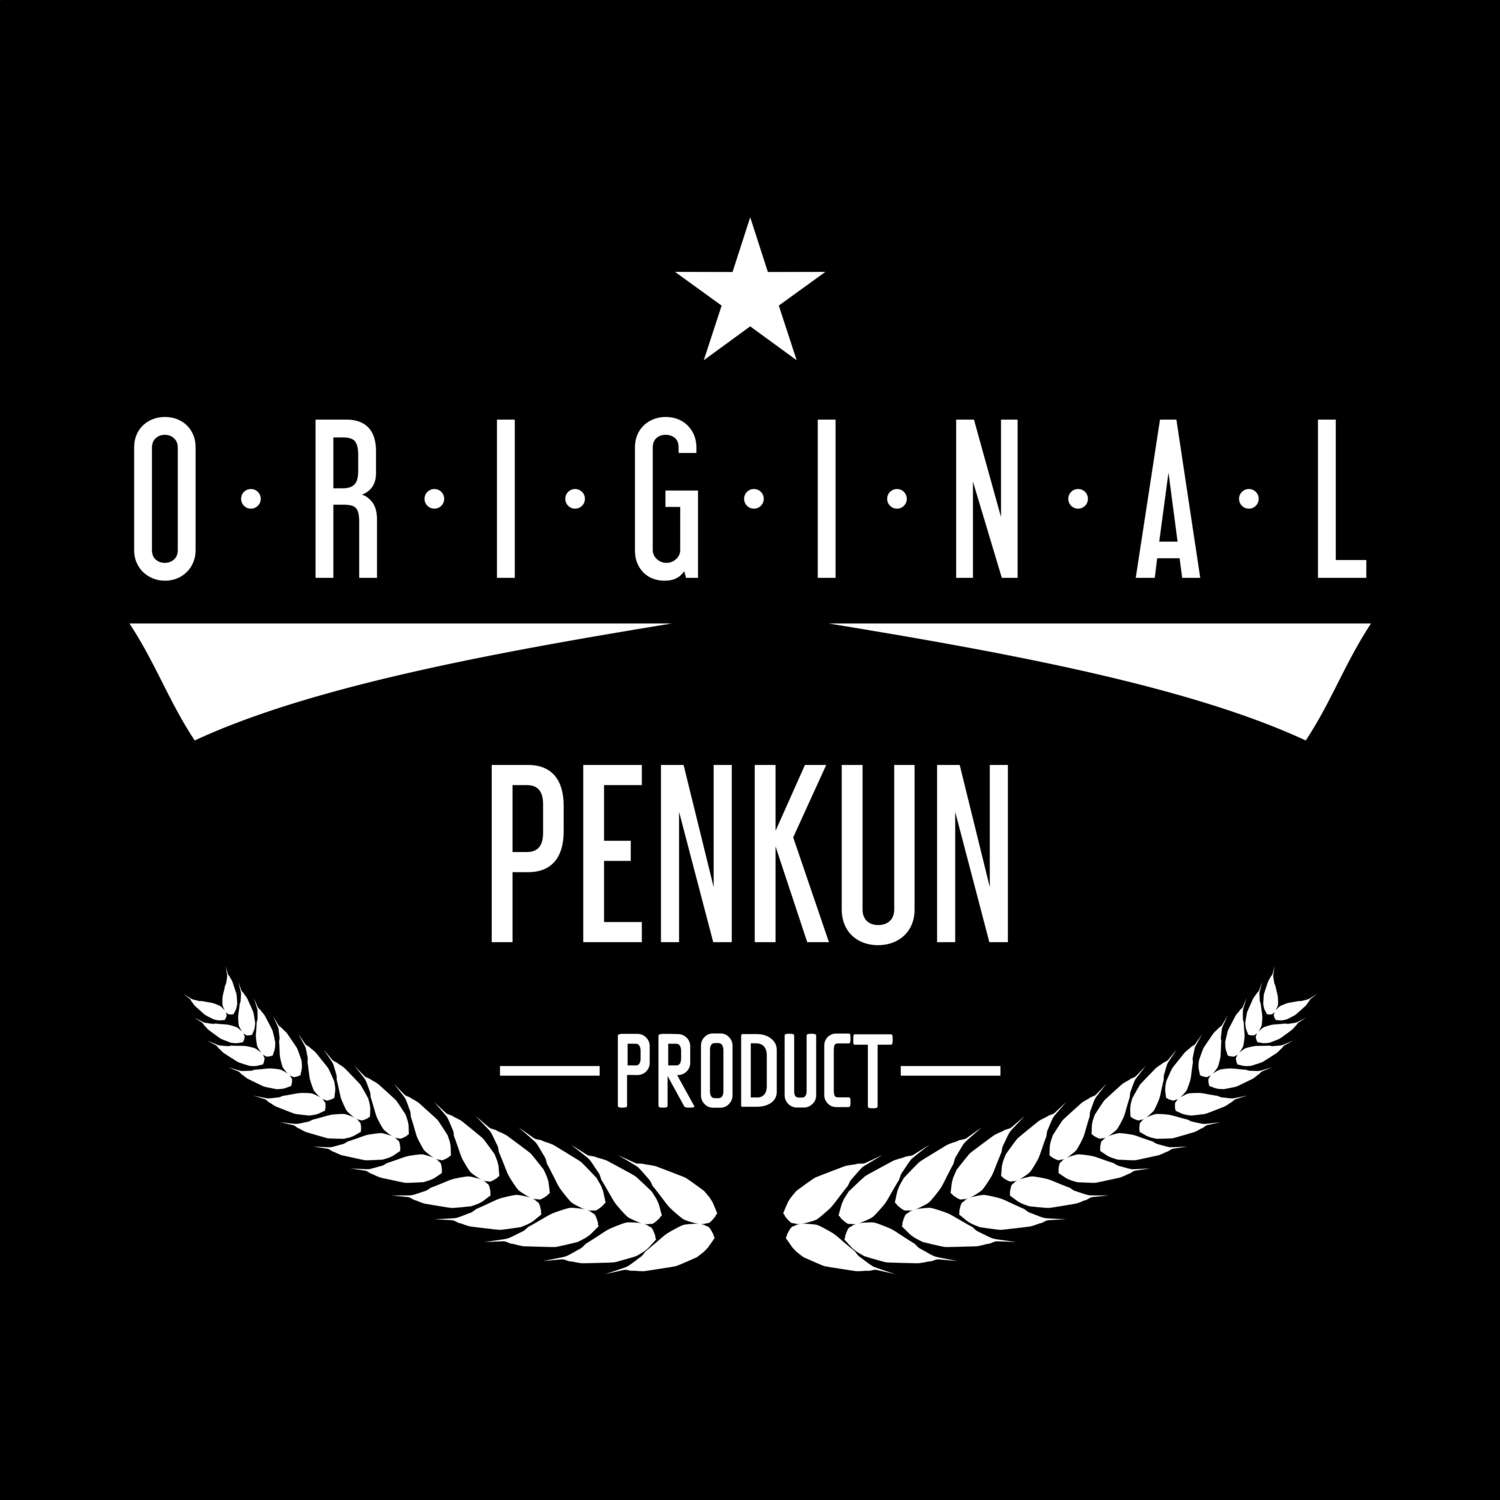 Penkun T-Shirt »Original Product«